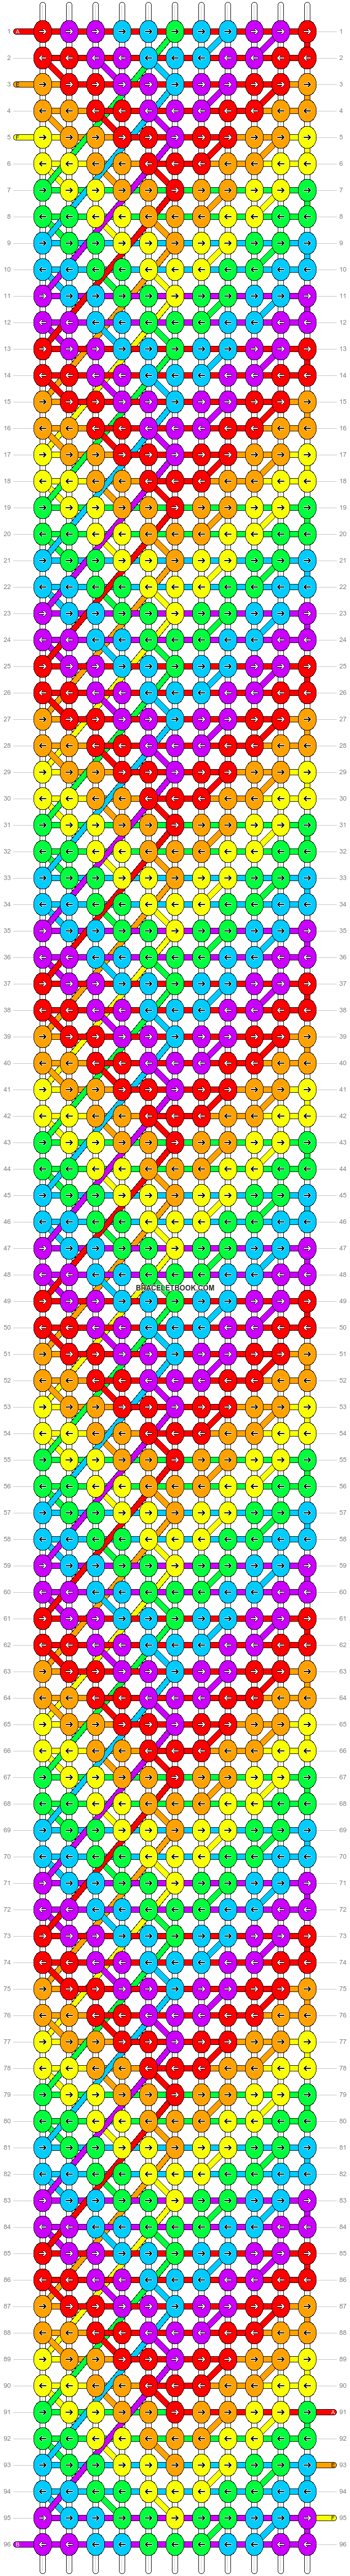 Alpha pattern #28275 | BraceletBook